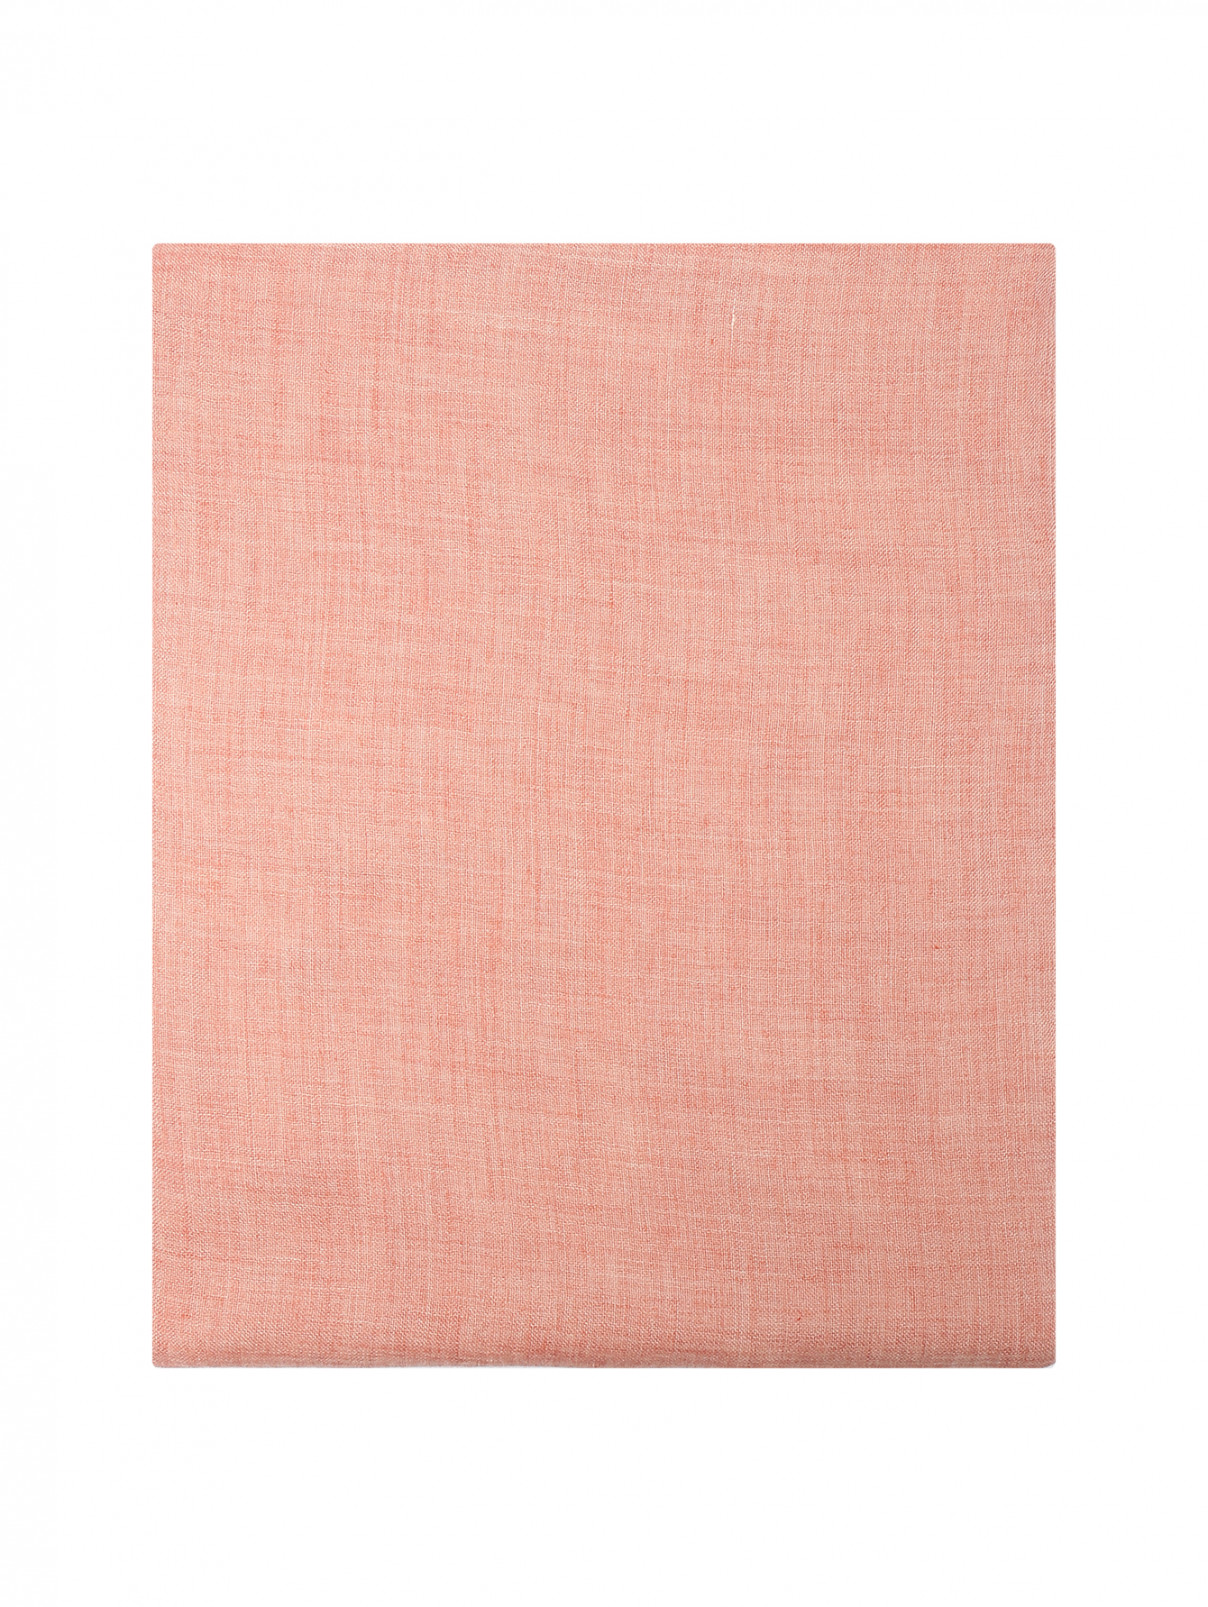 Шарф с добавлением кашемира Piacenza Cashmere  –  Общий вид  – Цвет:  Розовый